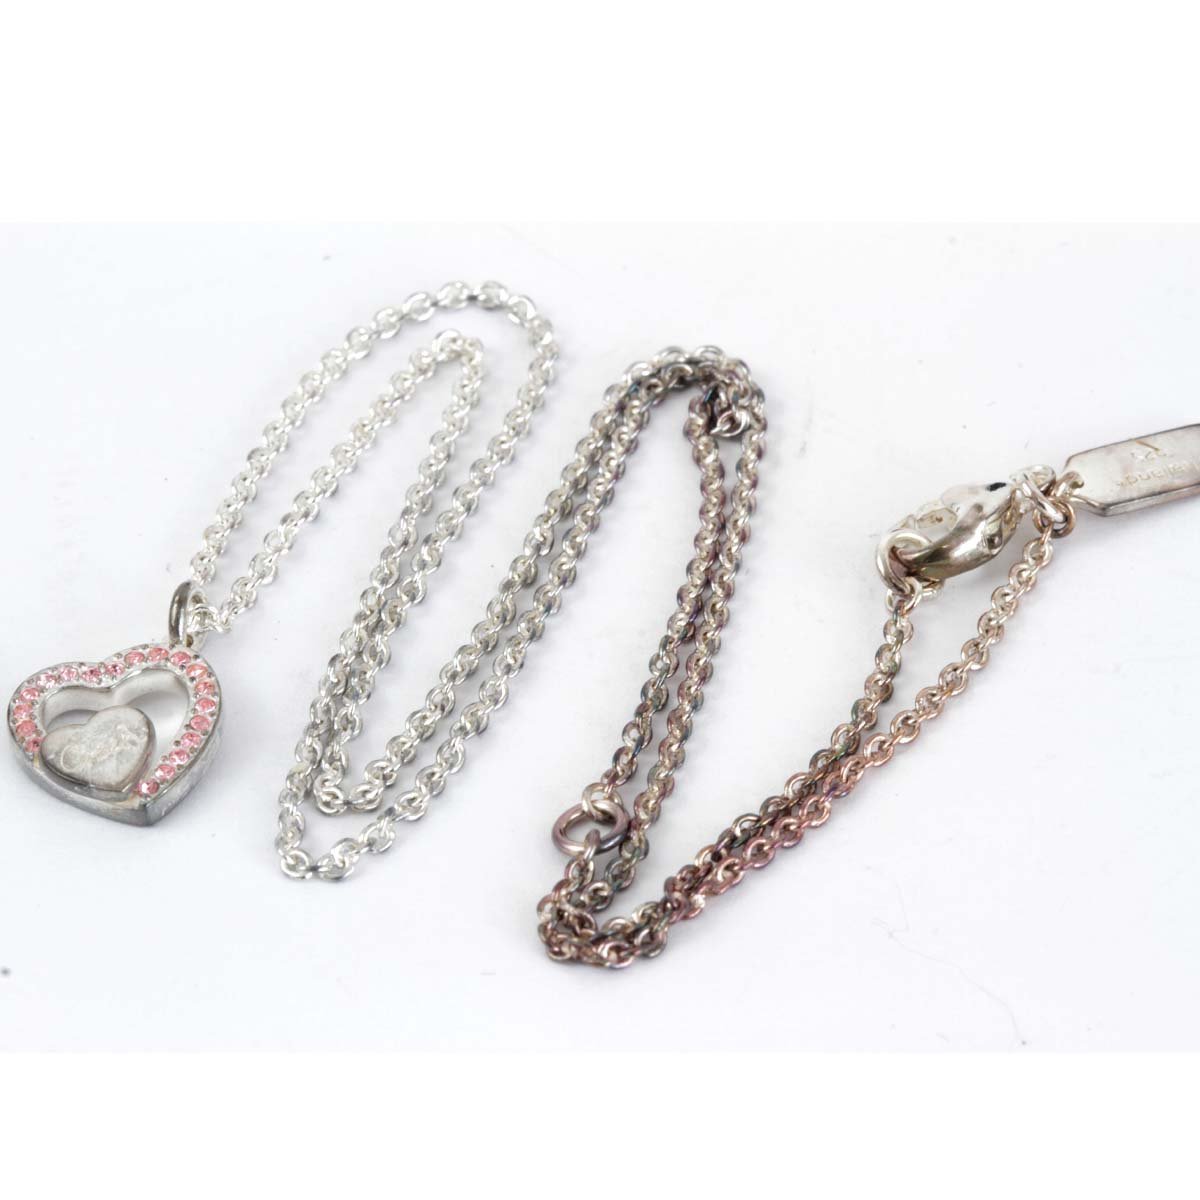 『 б/у 』   серебристый 925/ металлический   COACH ... COACH/...  сердце  NC 3 штуки / браслет   комплект    ожерелье 